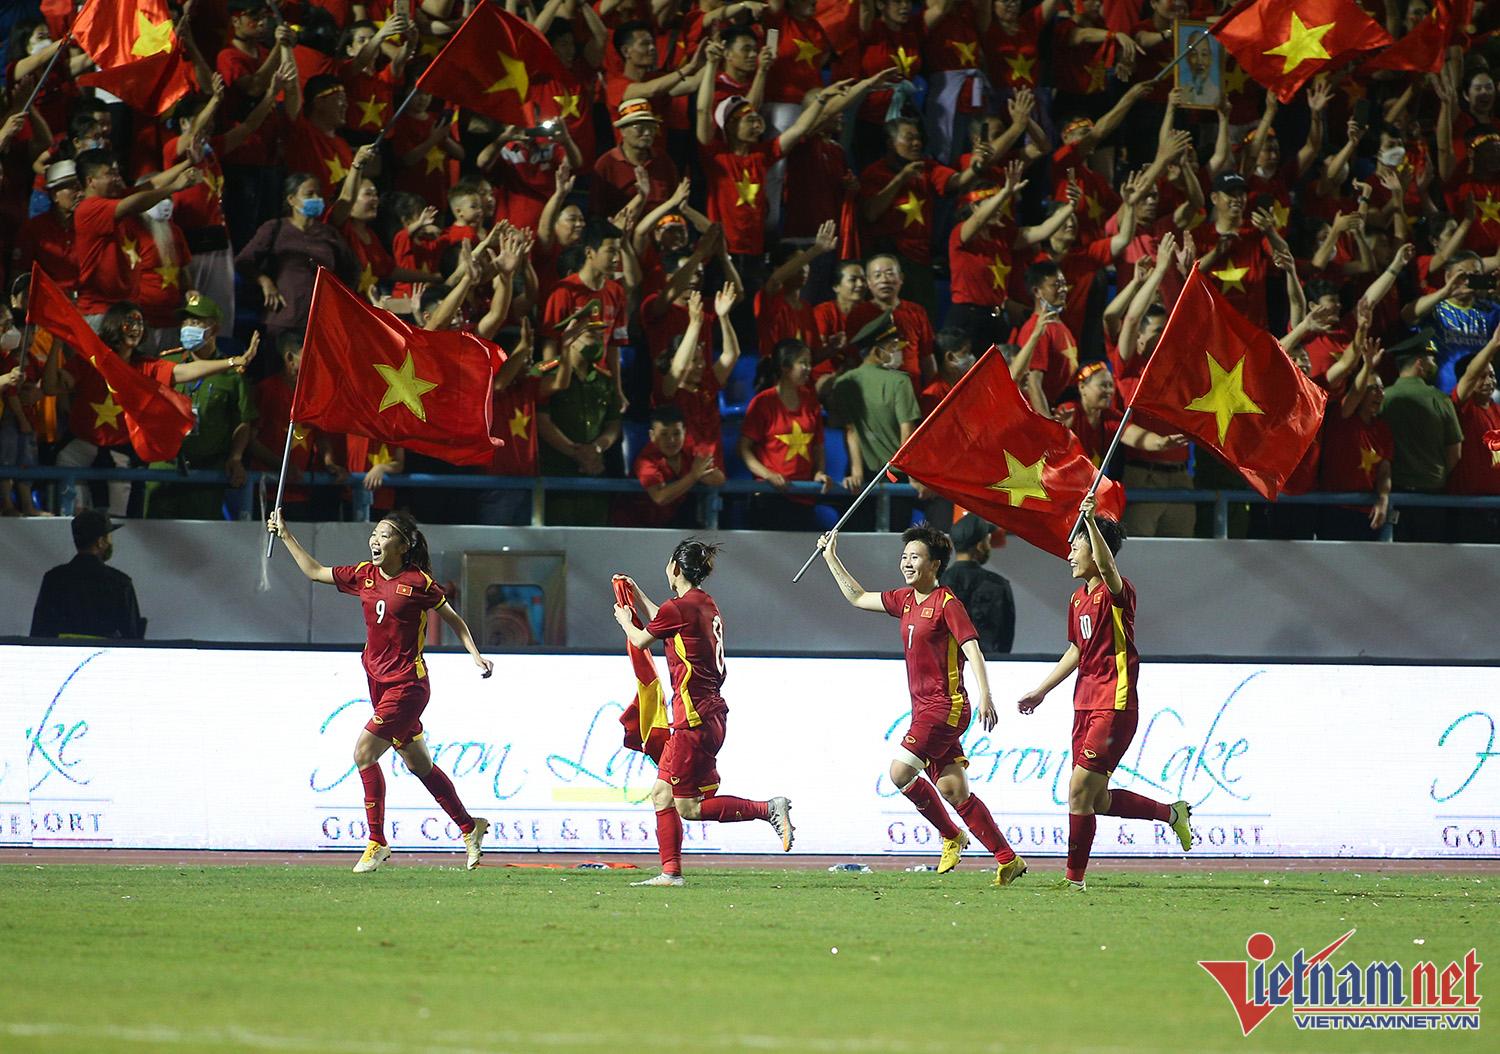 Xúc động hình ảnh cầu thủ nữ Việt Nam cắm cờ Tổ quốc trên bục nhận huy chương - Ảnh 1.